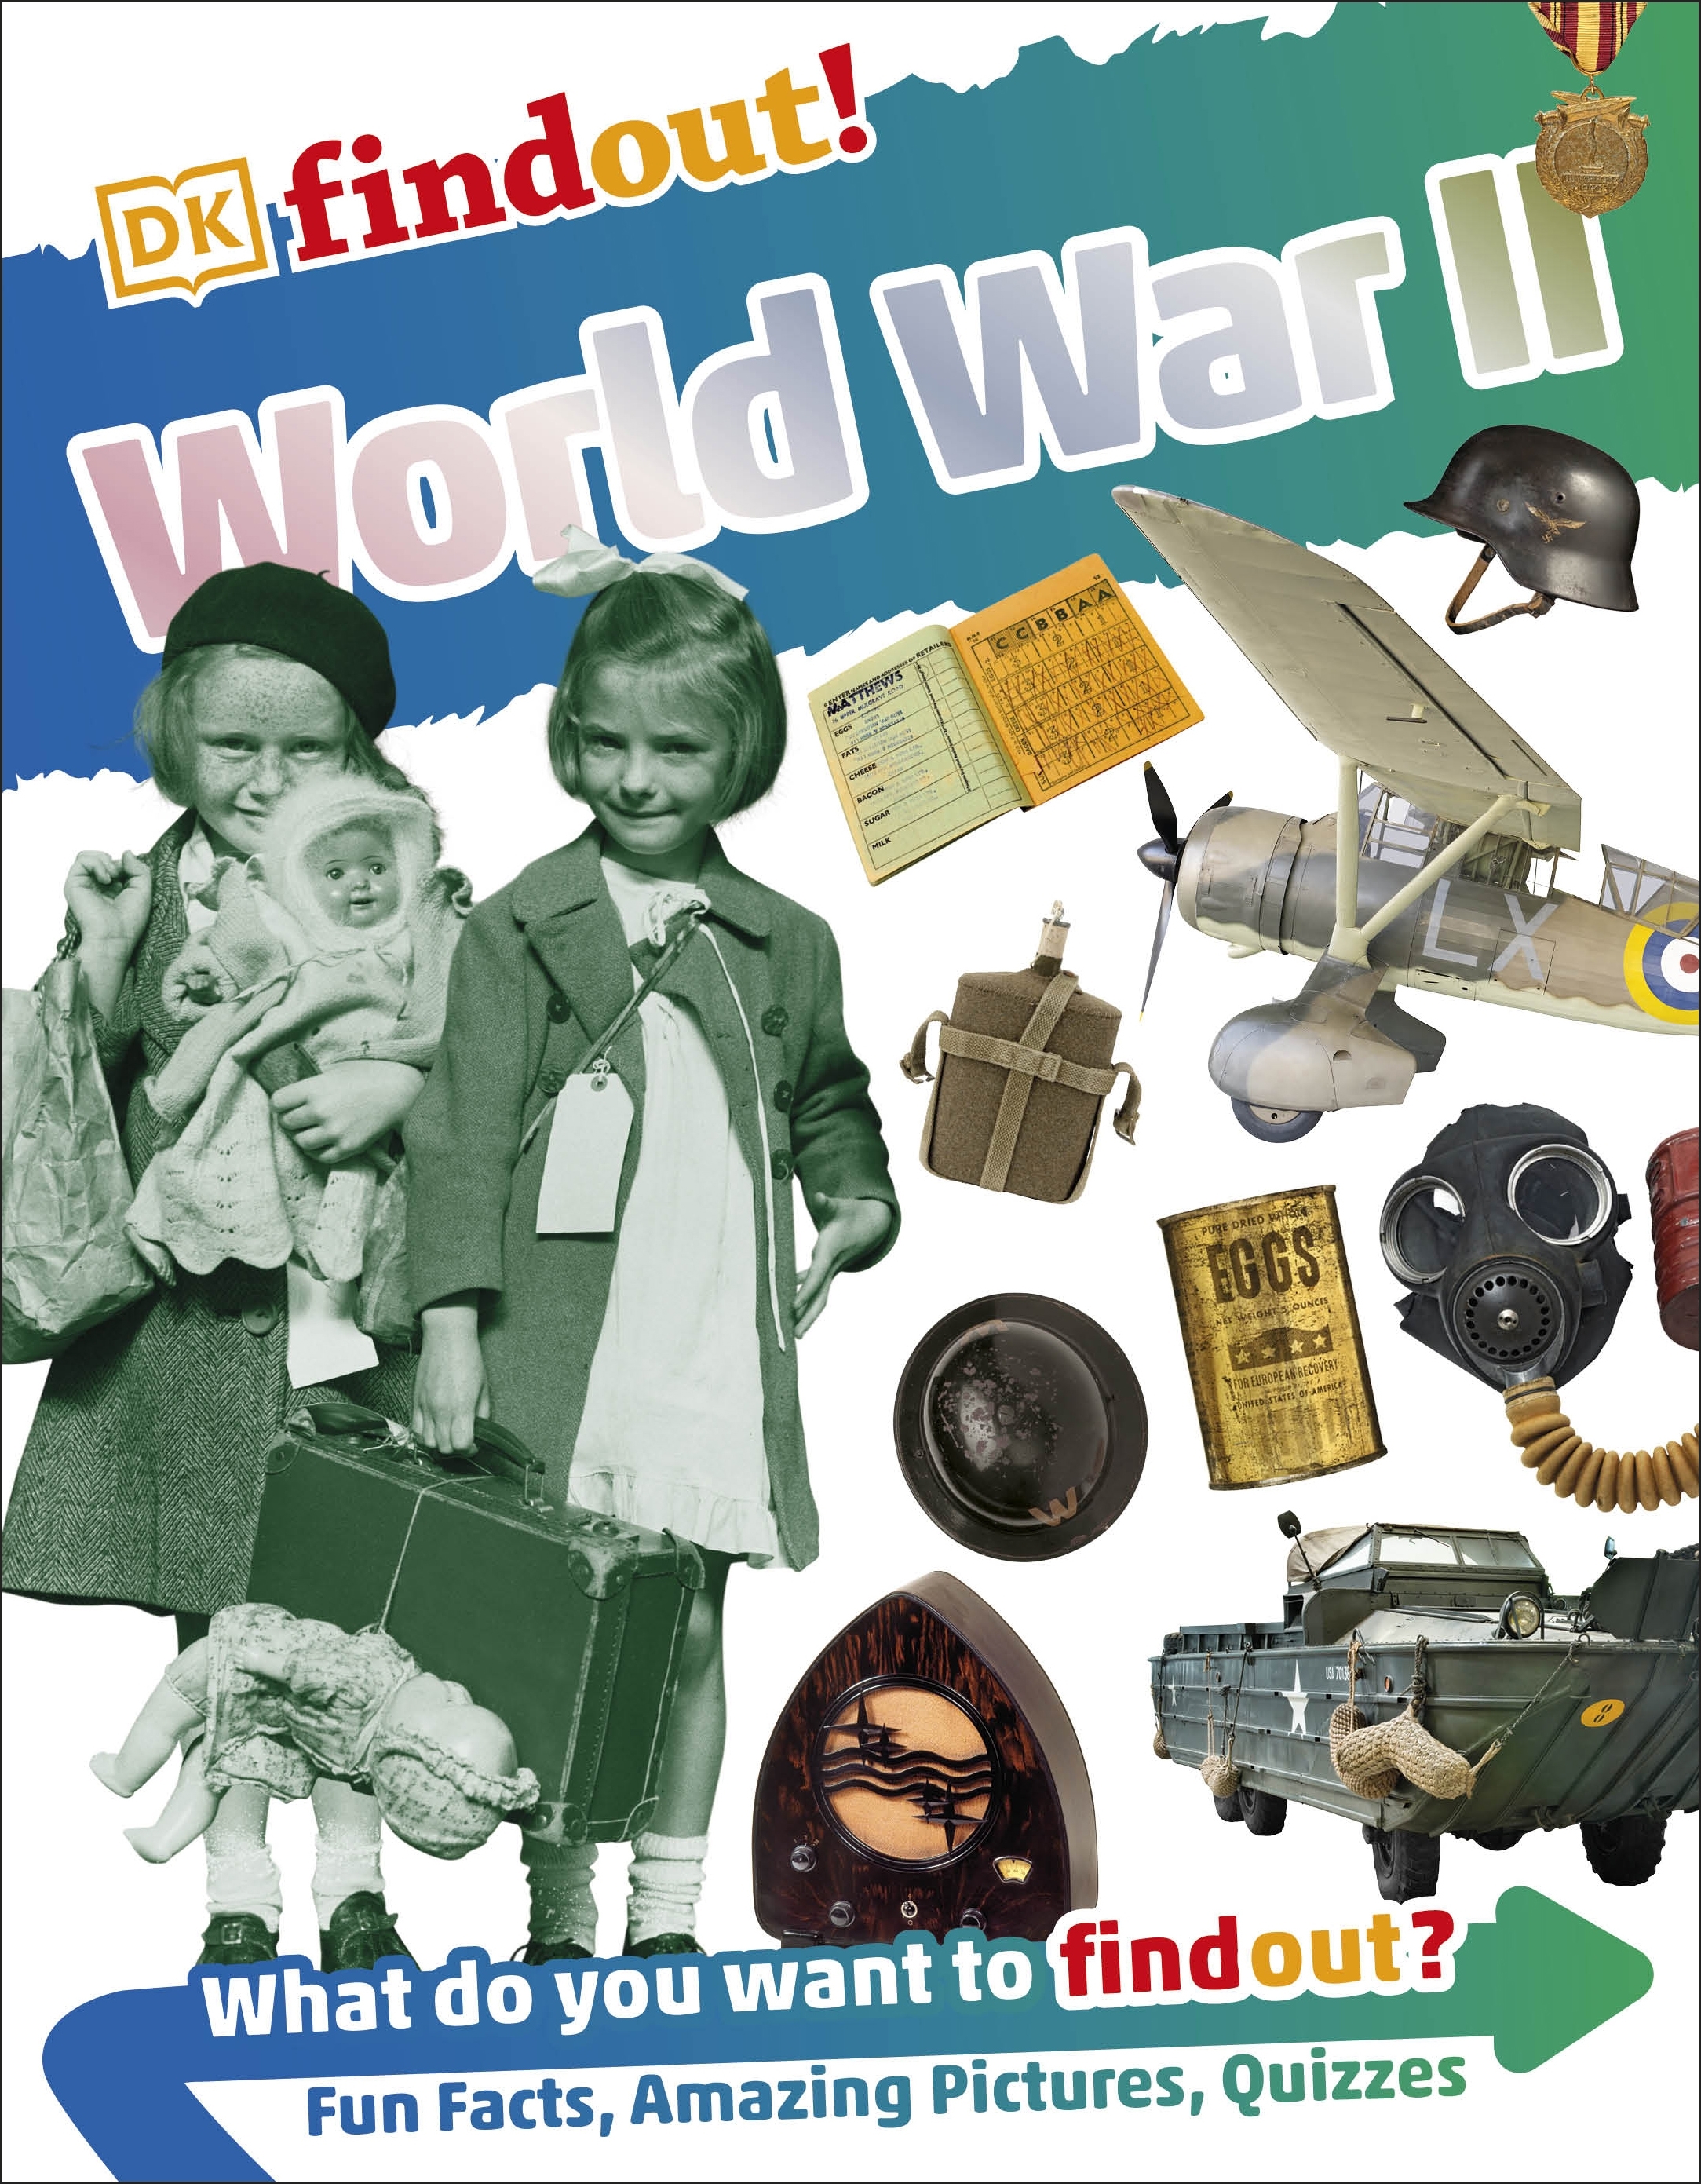 DKfindout! World War II by DK - Penguin Books Australia